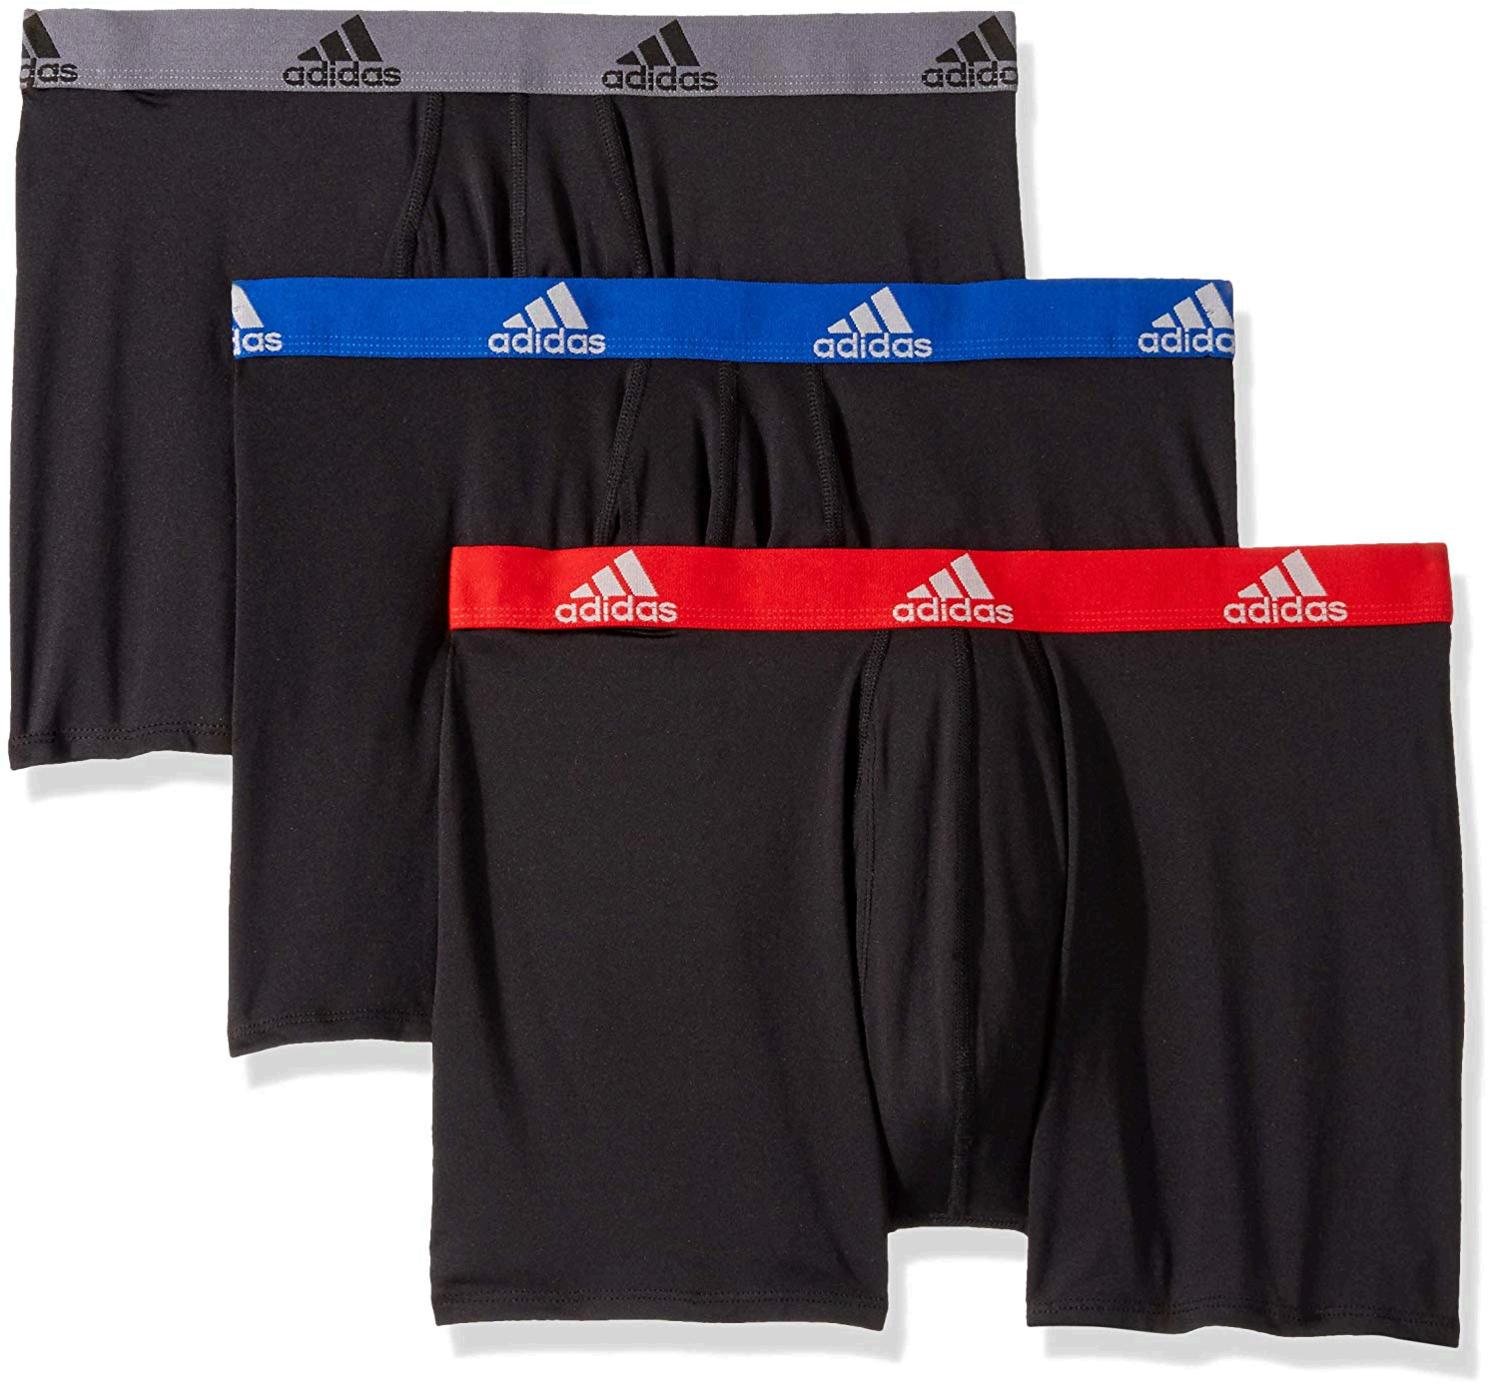 adidas Men's Climalite Boxer Briefs Underwear (3-Pack),, Black, Size ...